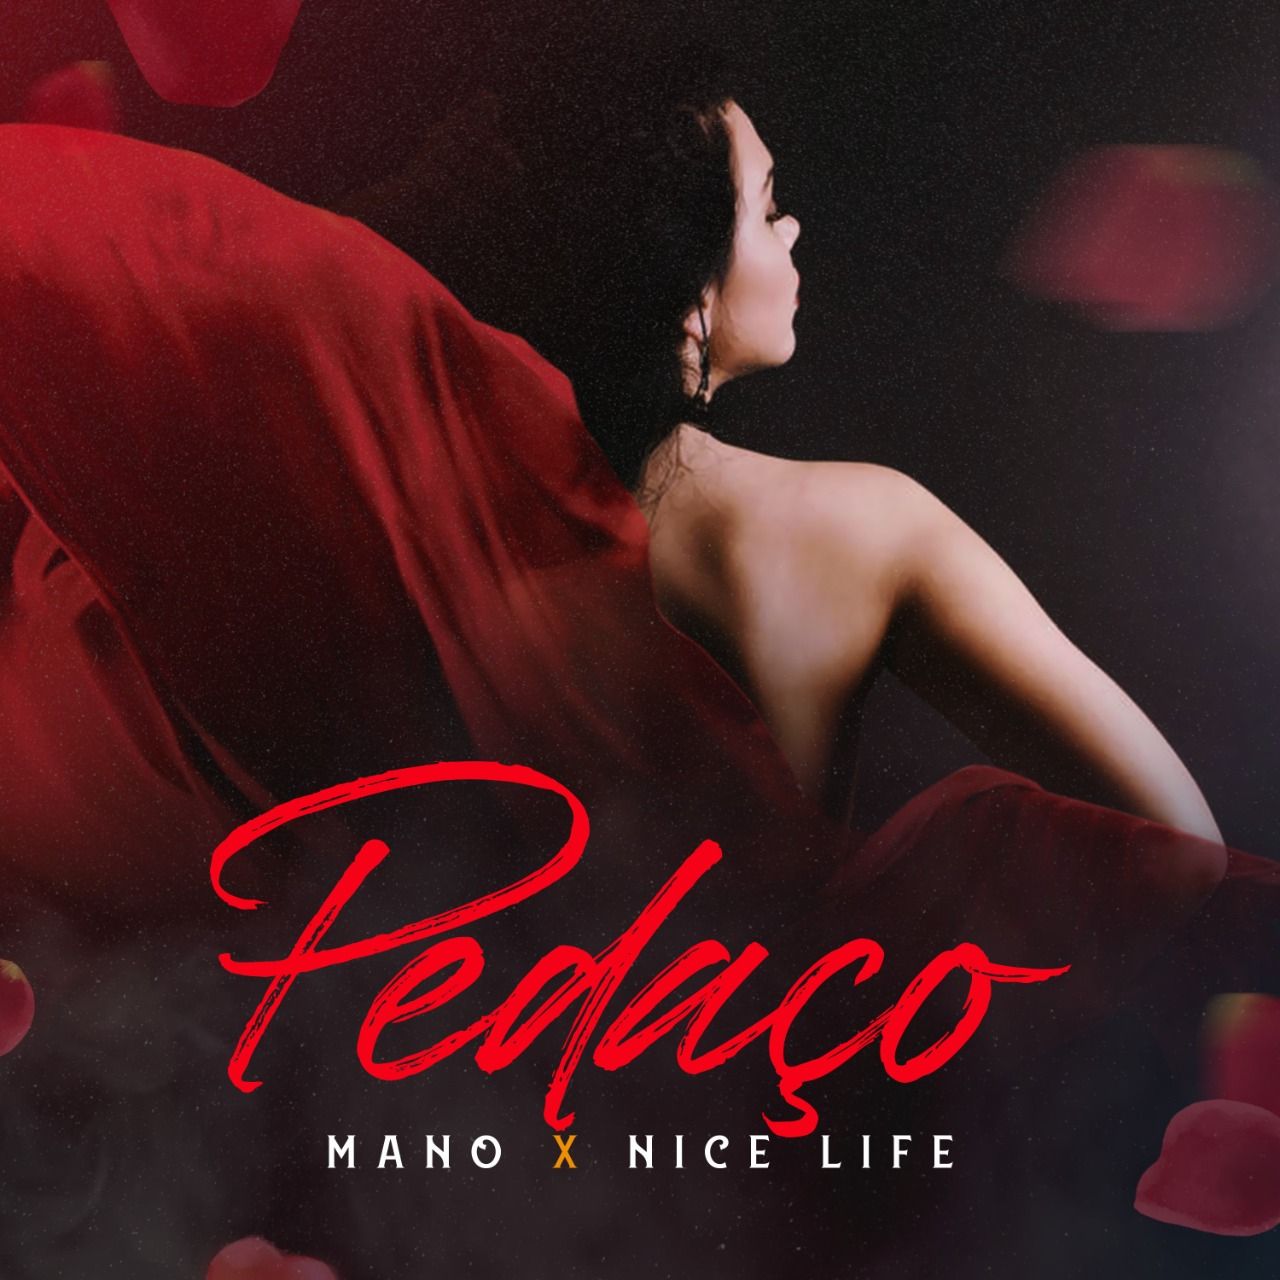 הורד Mano X Nice Life - Pedaco